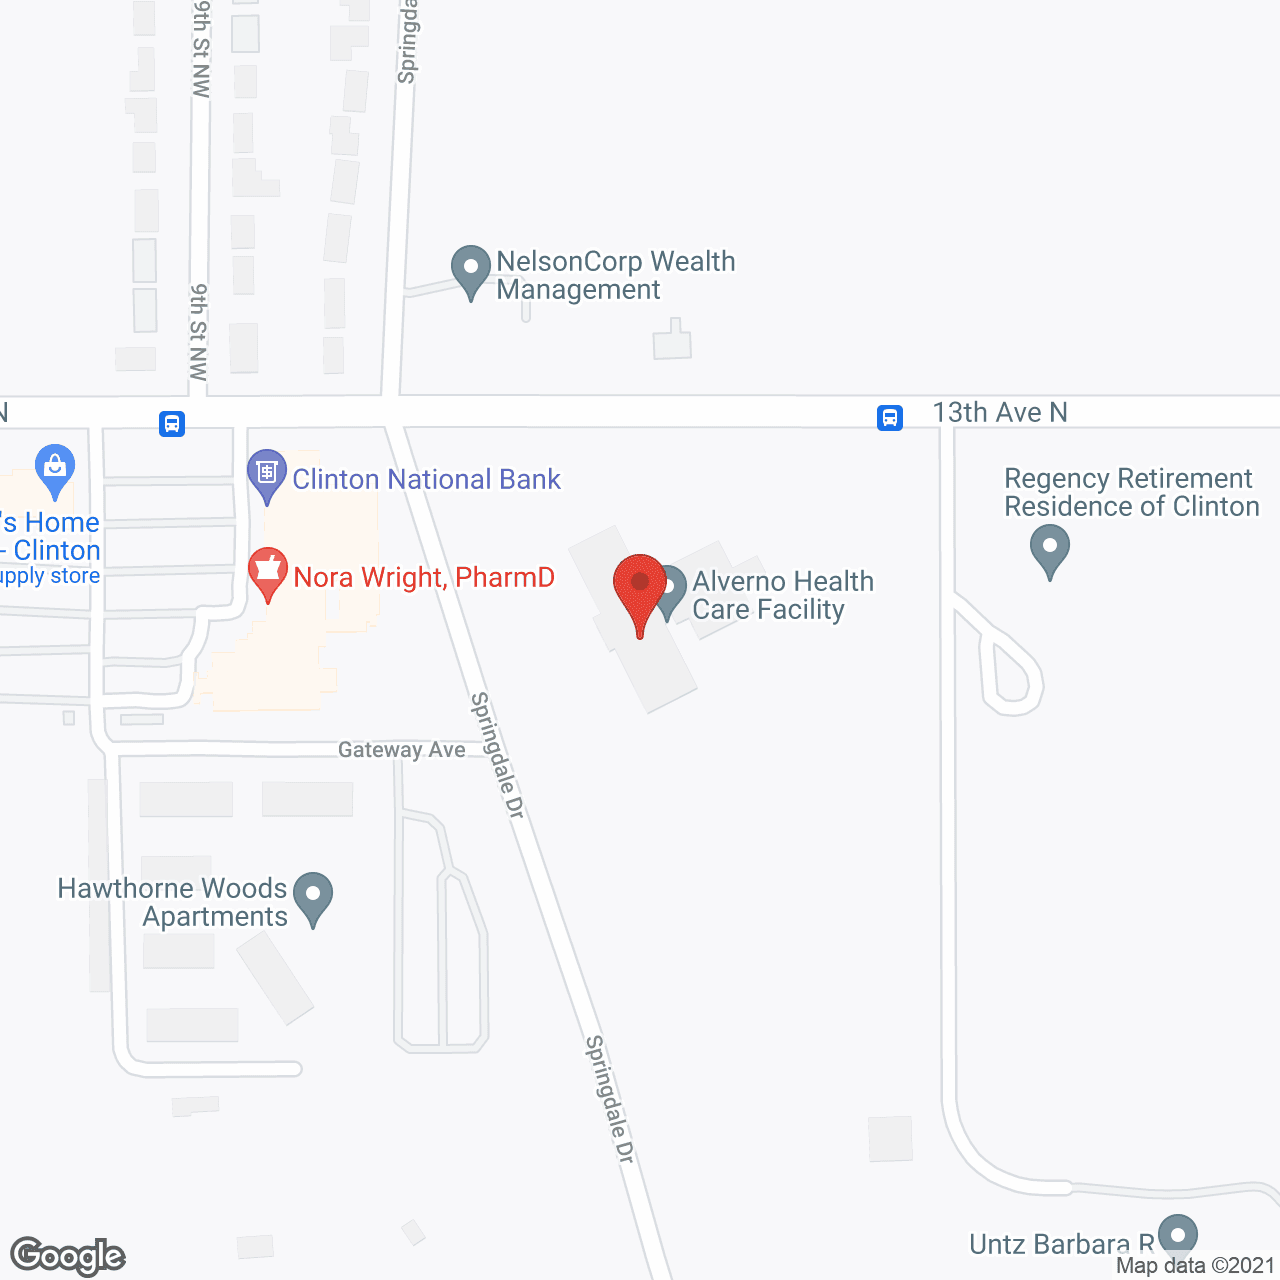 Alverno Health Care Facility in google map